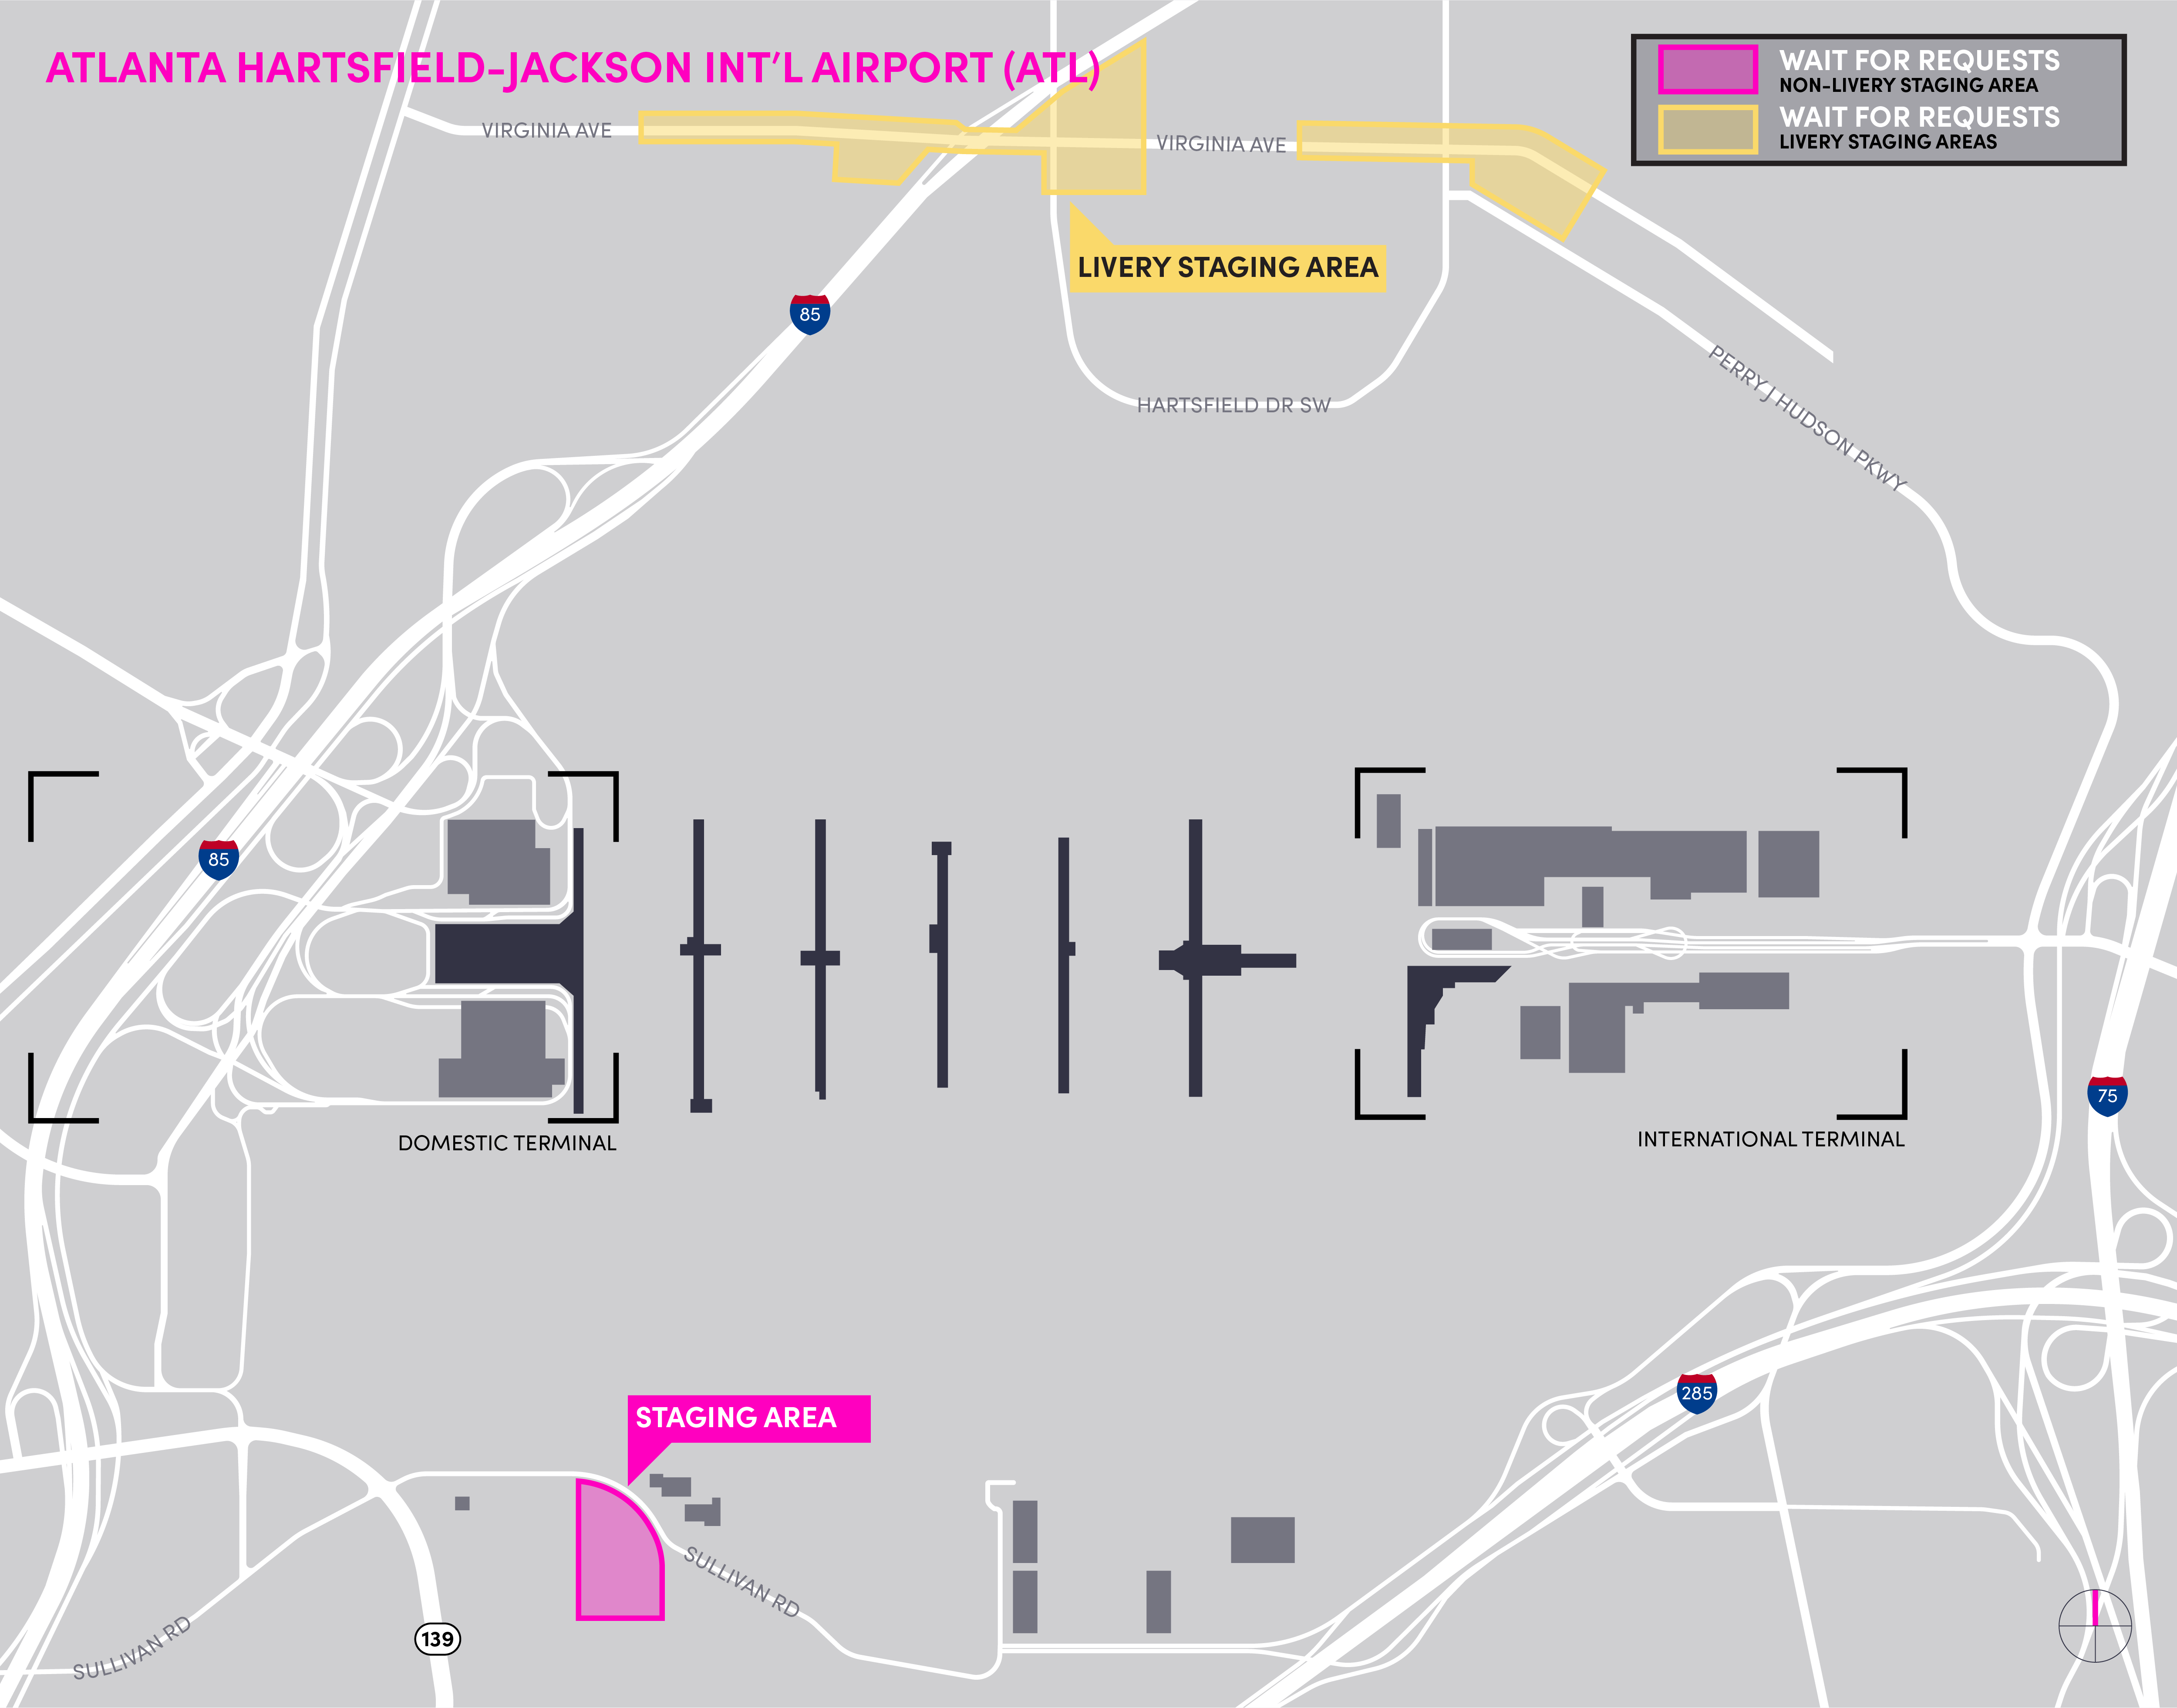 Mapa do aeroporto ATL detalhando a área de espera e a área de espera de Livery.